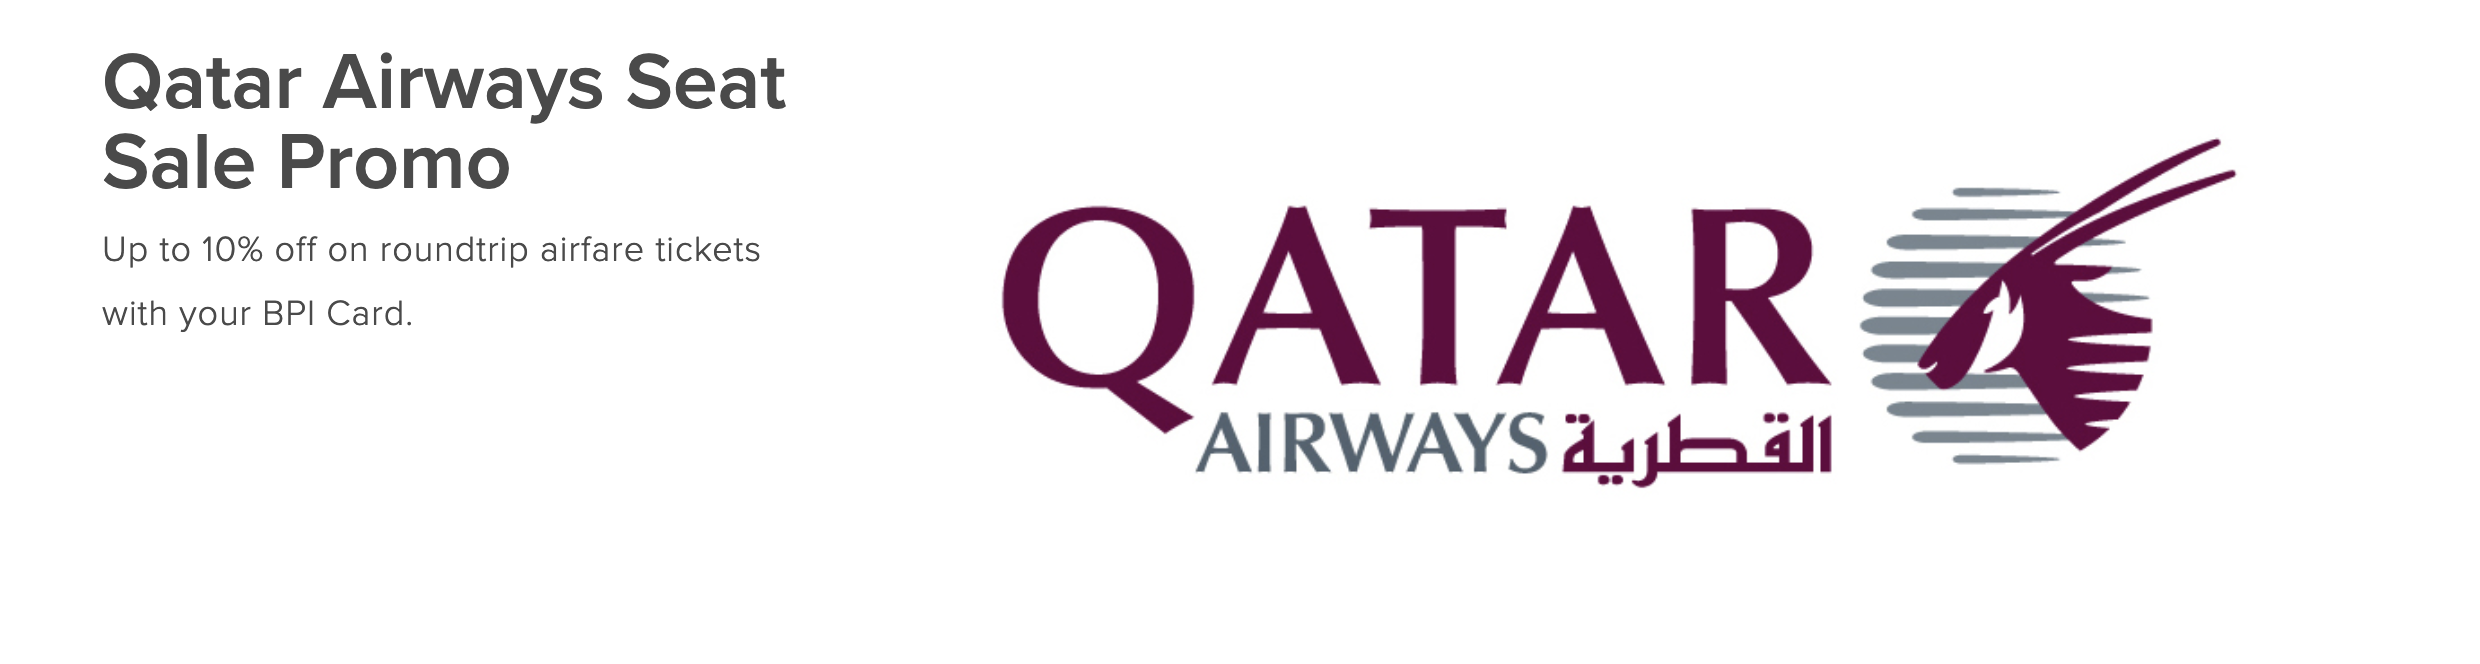 bpi credit card promo - qatar airways